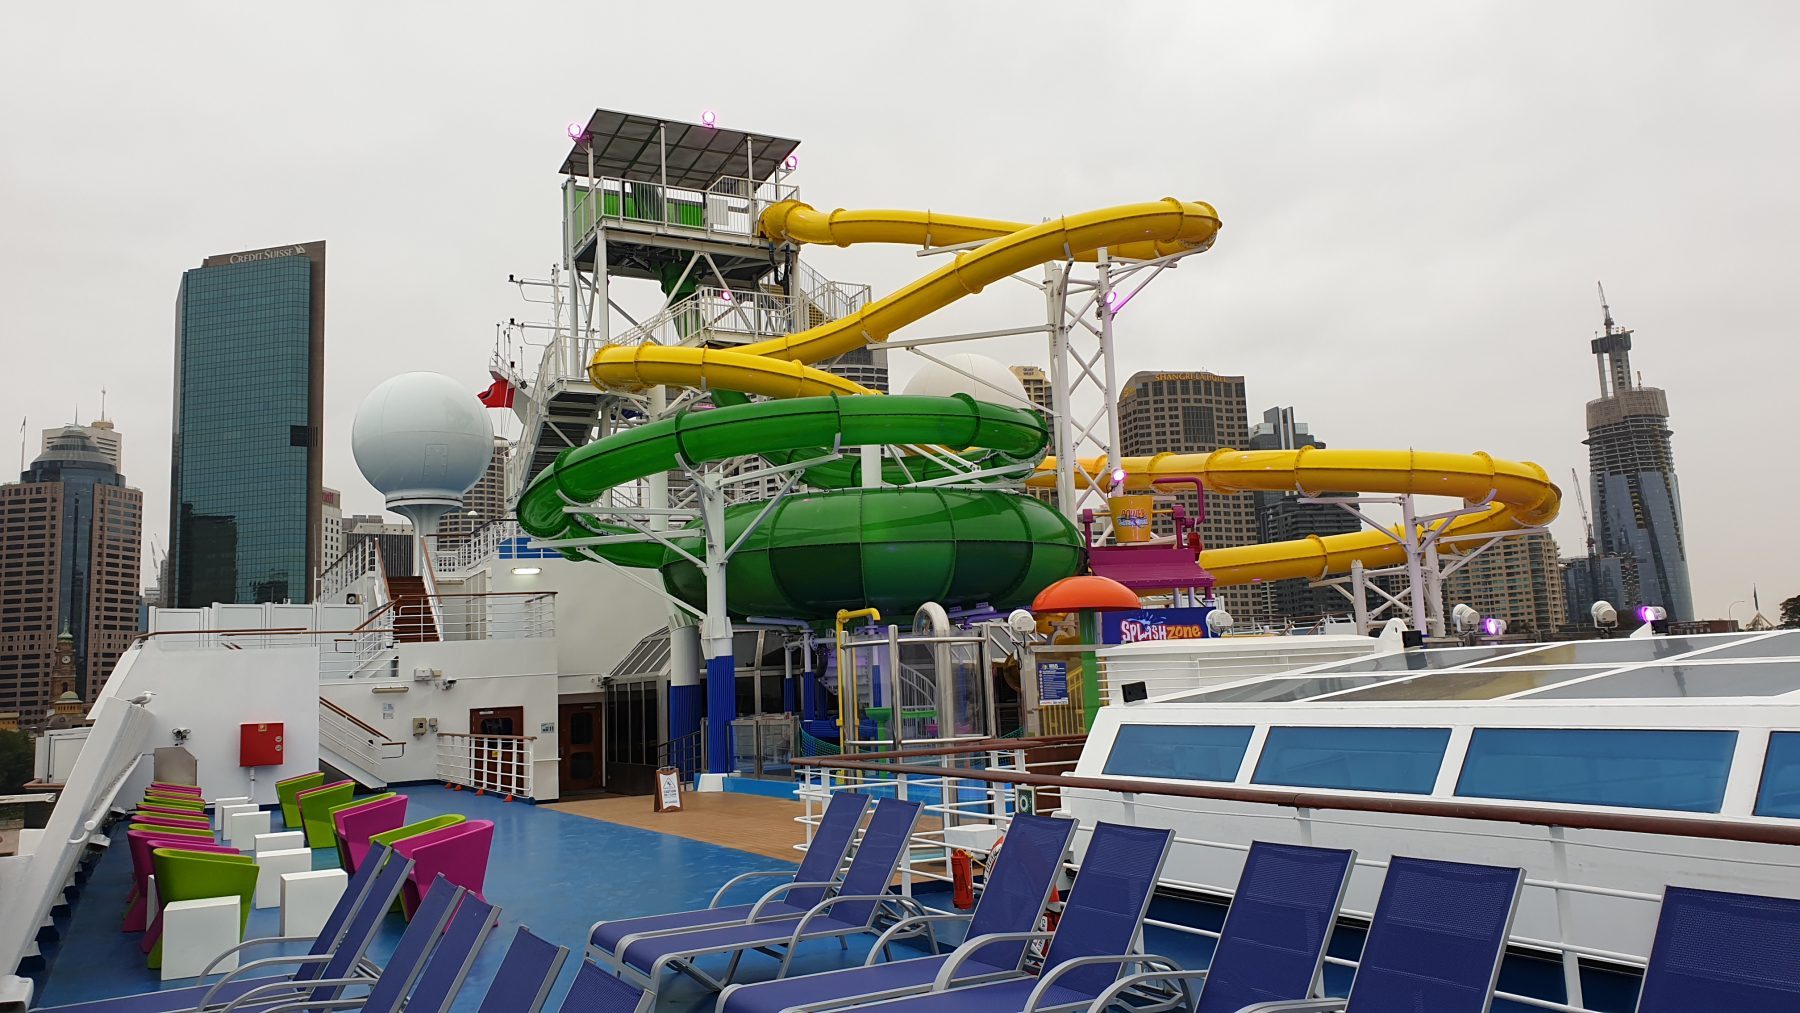 carnival splendor next cruise